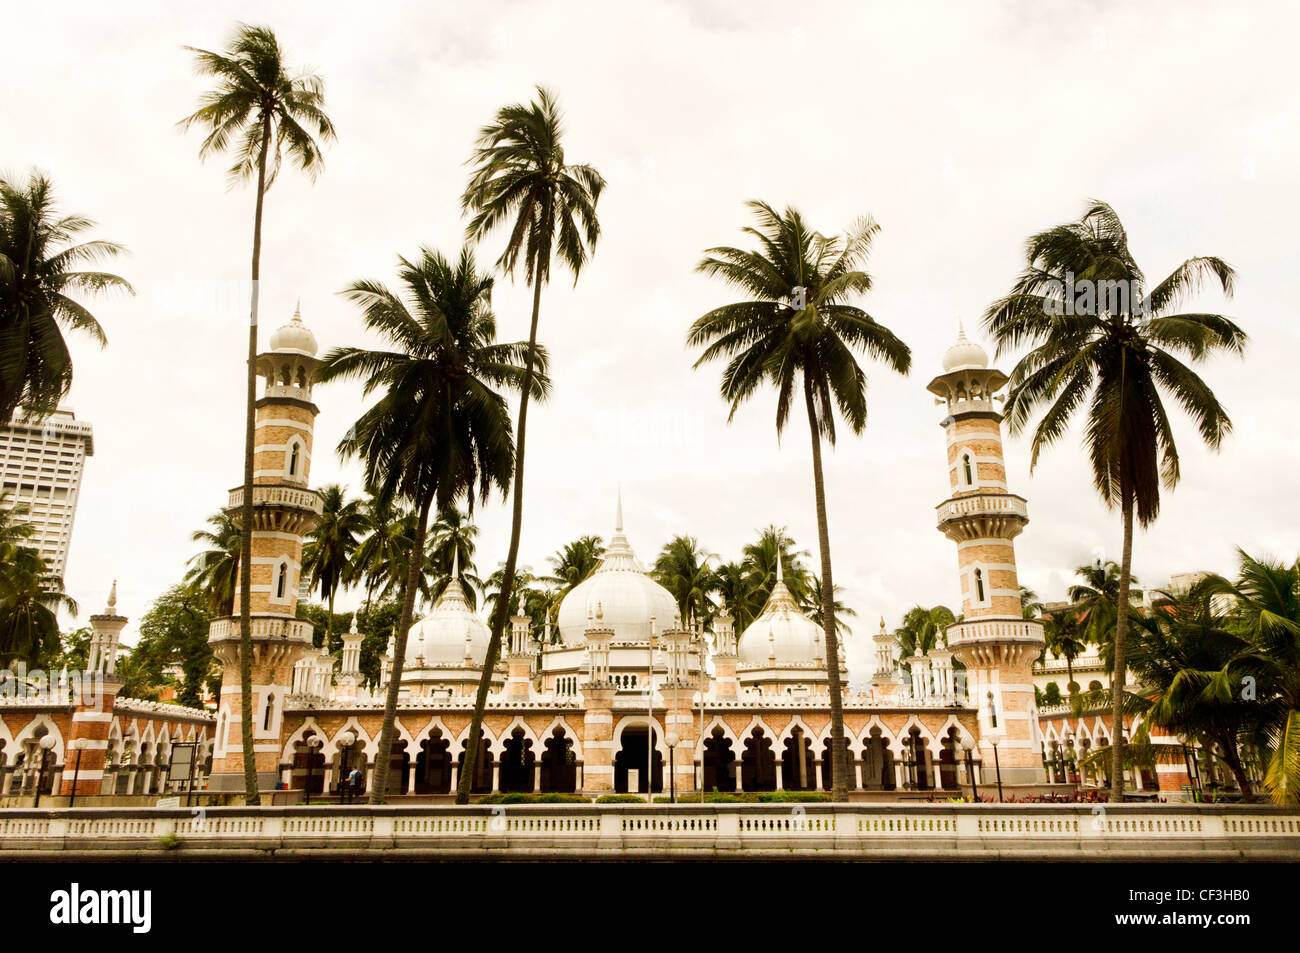 Masjid Jamek, in Kuala Lumpur, Malaysia, Asia. It is one of the oldest mosques in Kuala Lumpur, Malaysia. Stock Photo